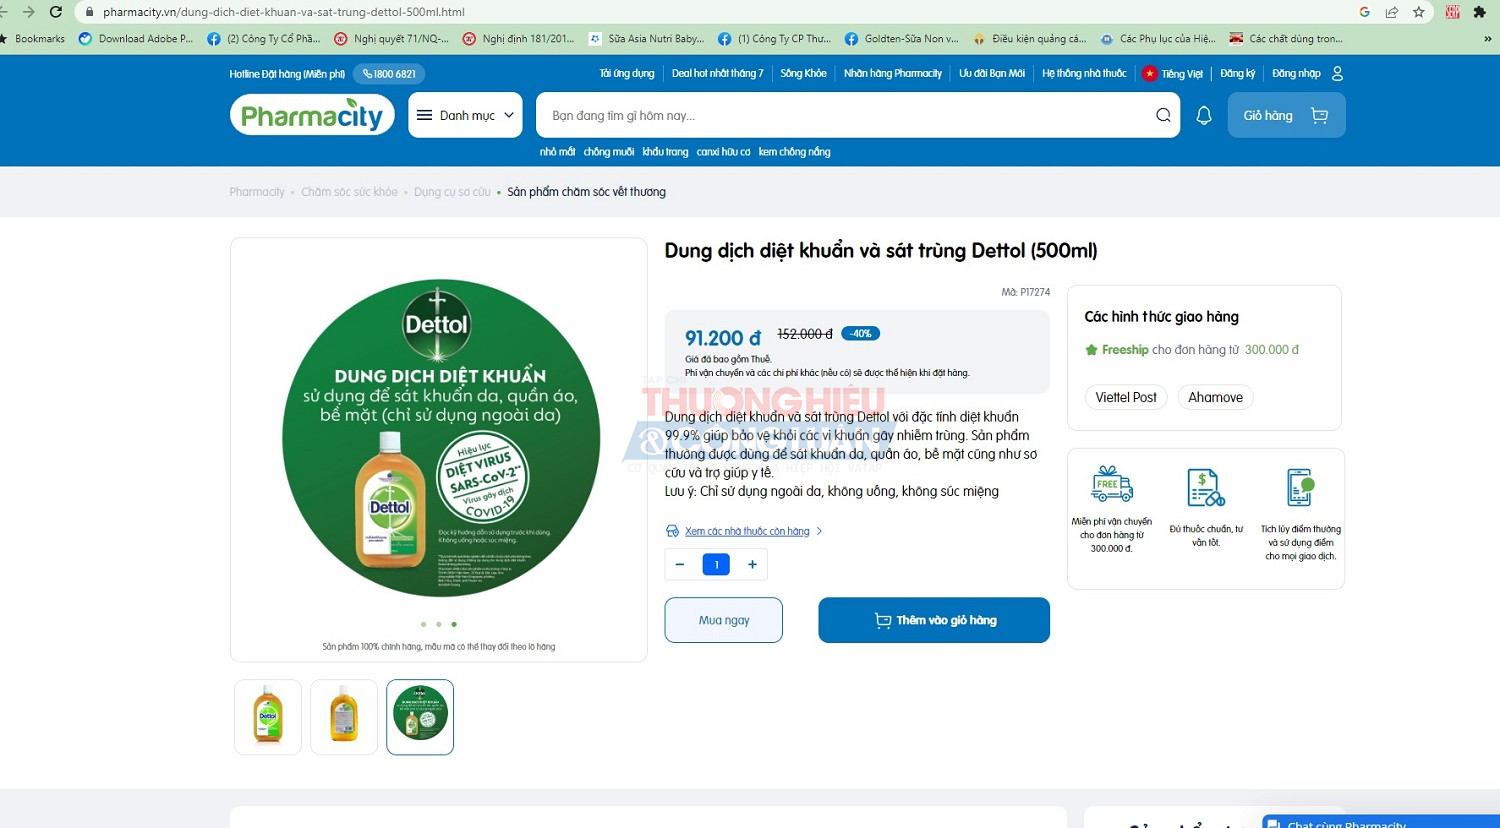 Hình ảnh giới thiệu sản phẩm dung dịch diệt khuẩn và sát trùng DETTOL được đăng tải trên website của dược phẩm Pharmacity